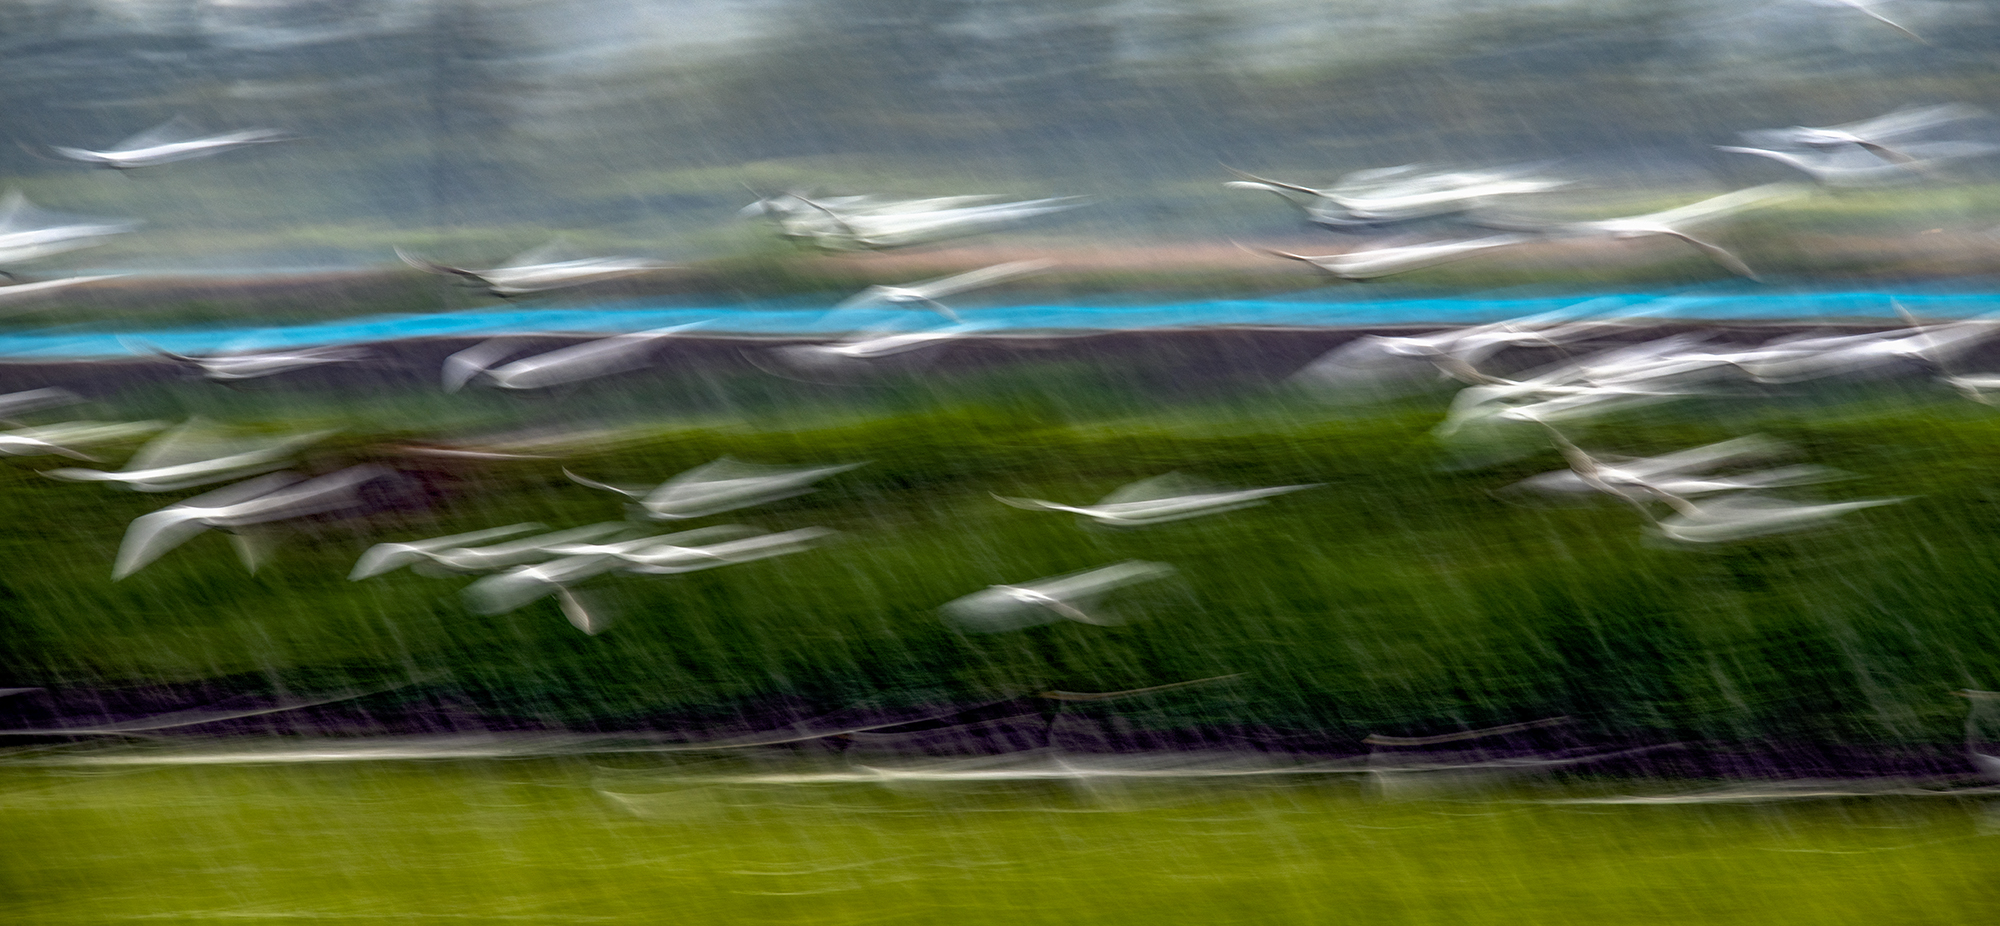 暴雨瞬间飞翔的白鹭